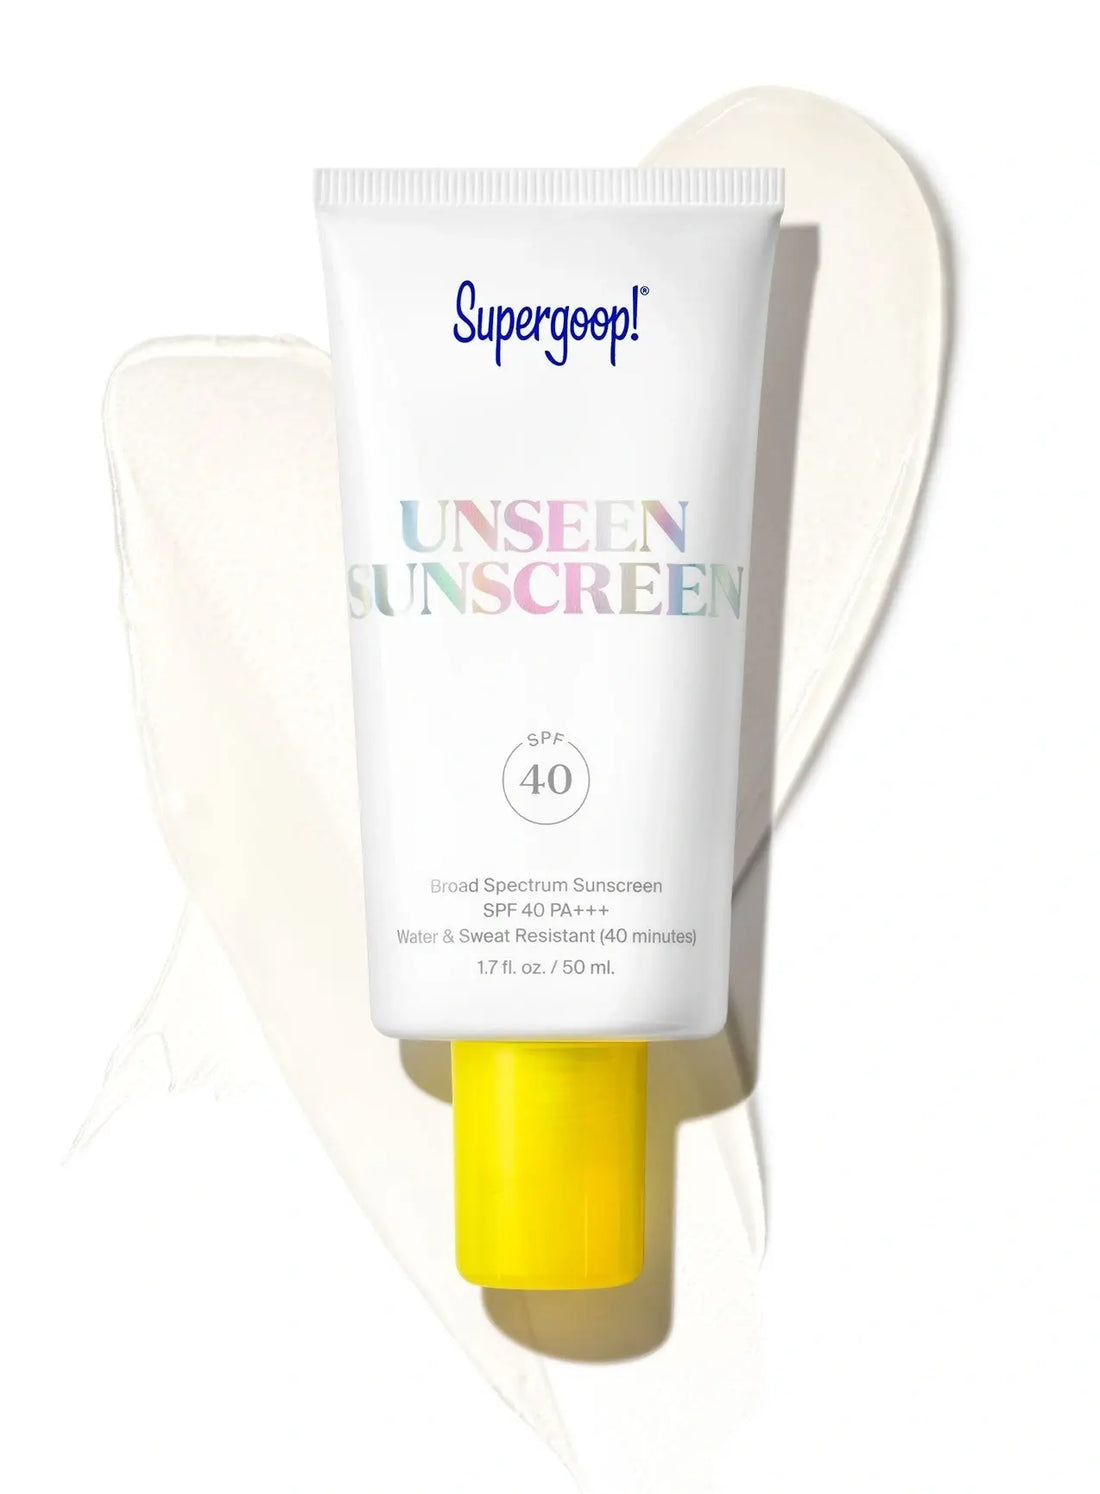 Supergoop Unseen Sunscreen SPF 40 